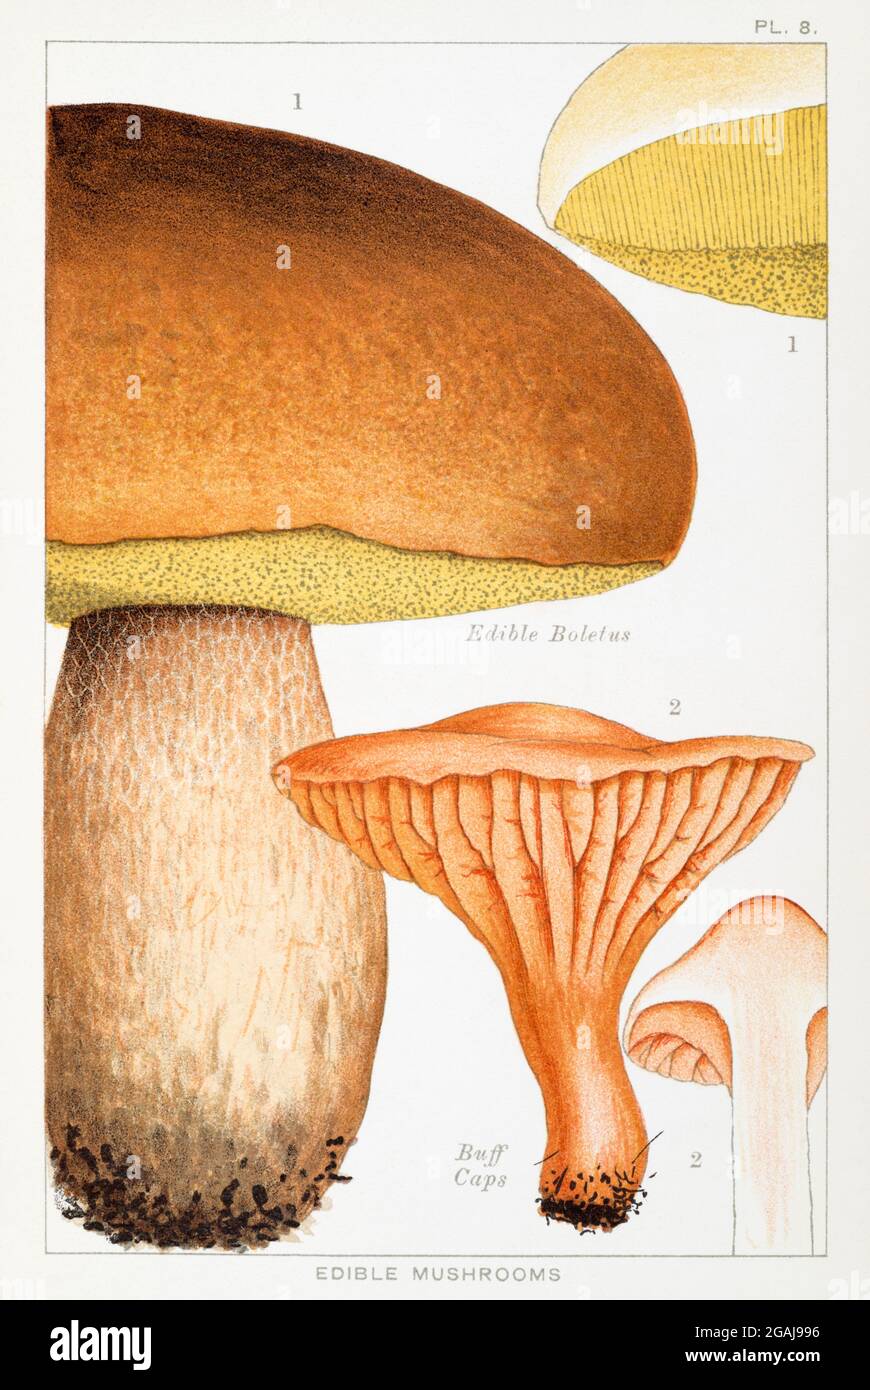 Illustrazione di Boletus commestibile / Boletus edulis & Buff Caps / Hygrophorus pratensis in Mordechai Cooke 'funghi commestibili e velenosi' 1894 Foto Stock